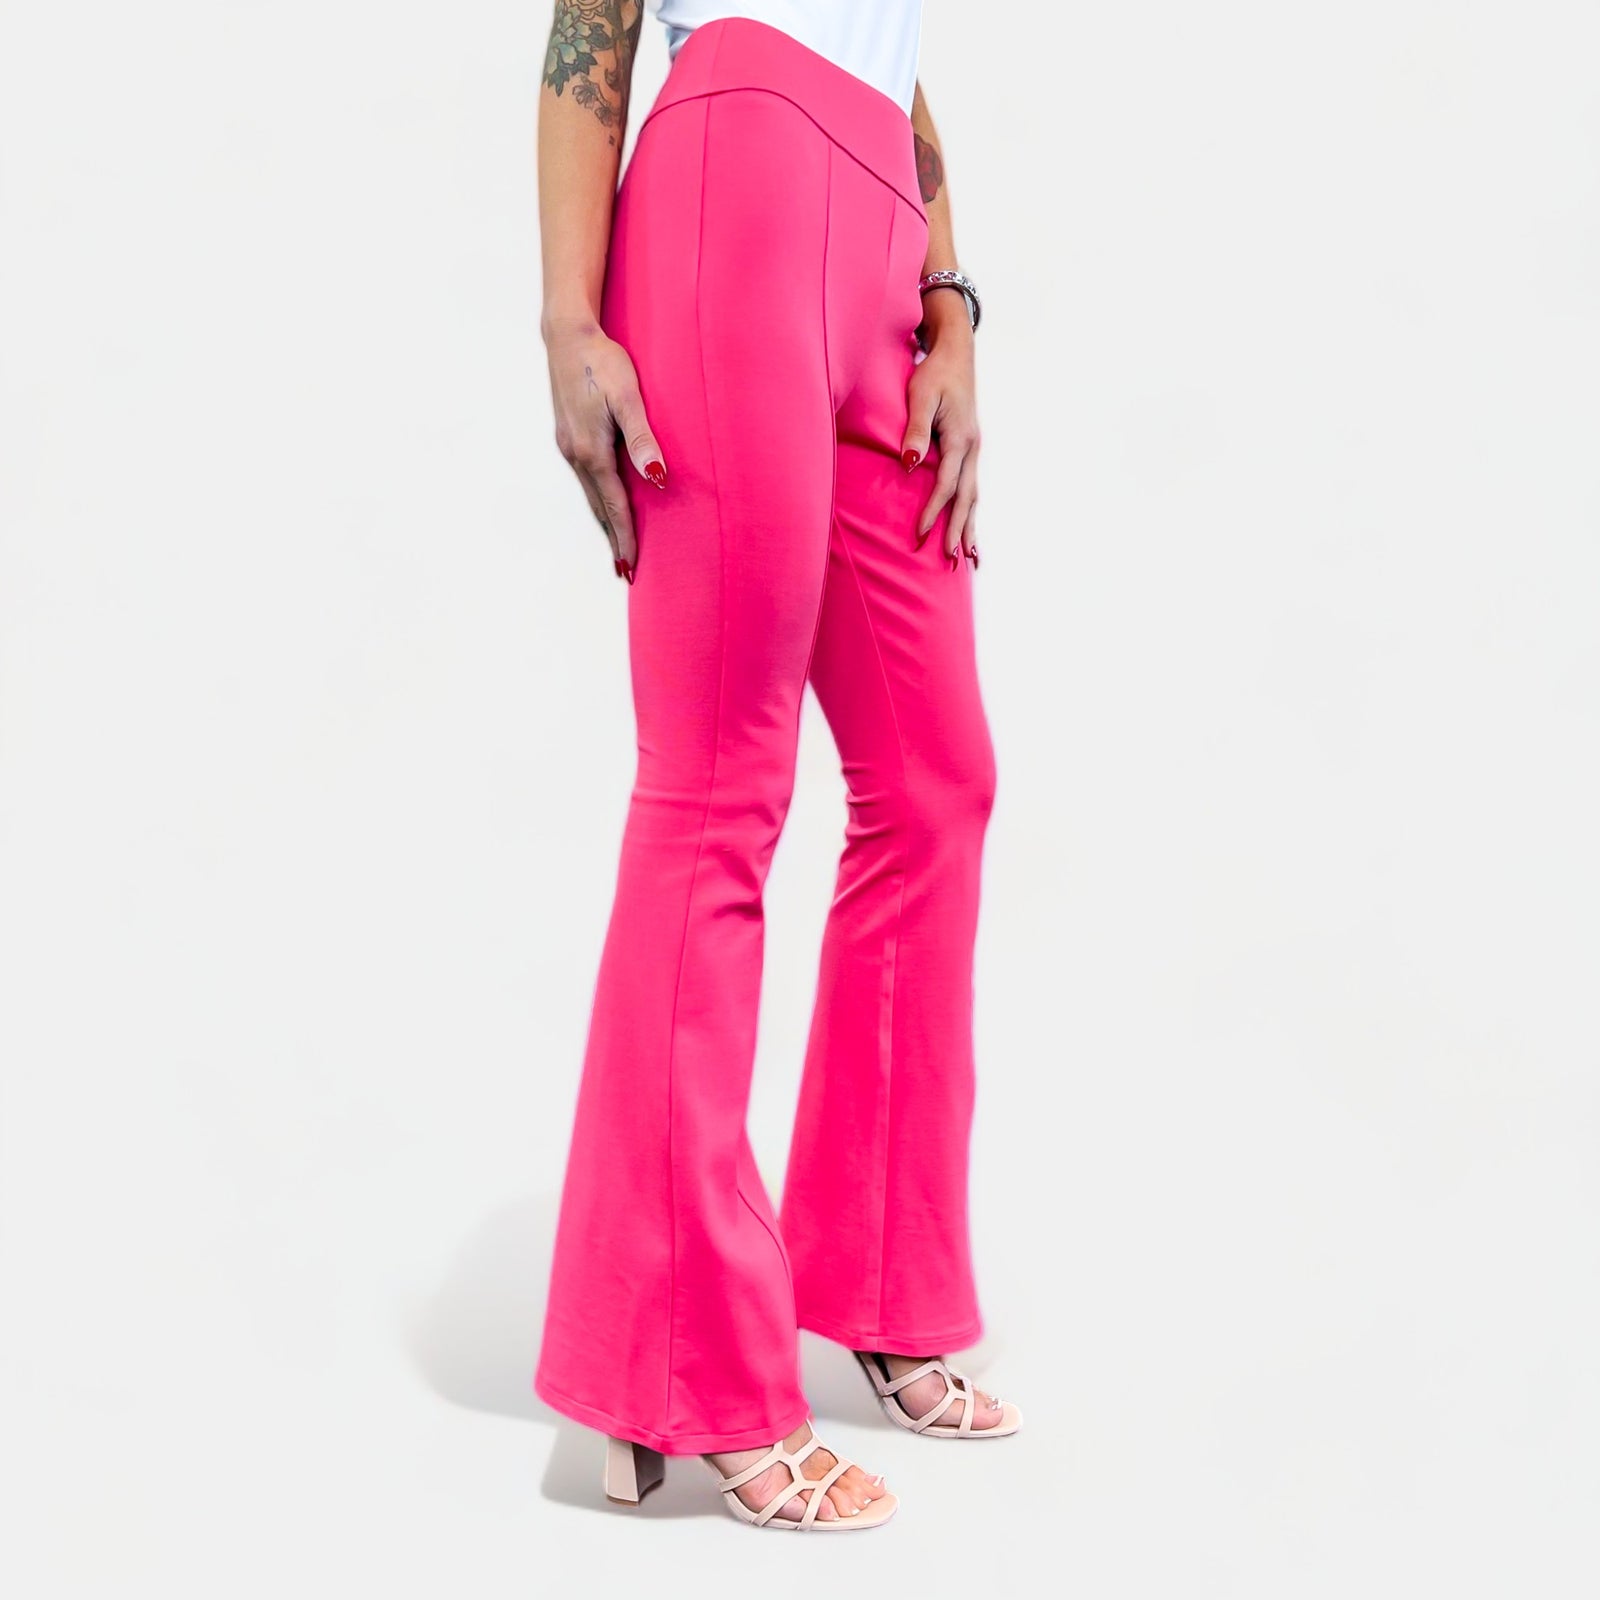 Pink Flare Legging - Shop on Pinterest